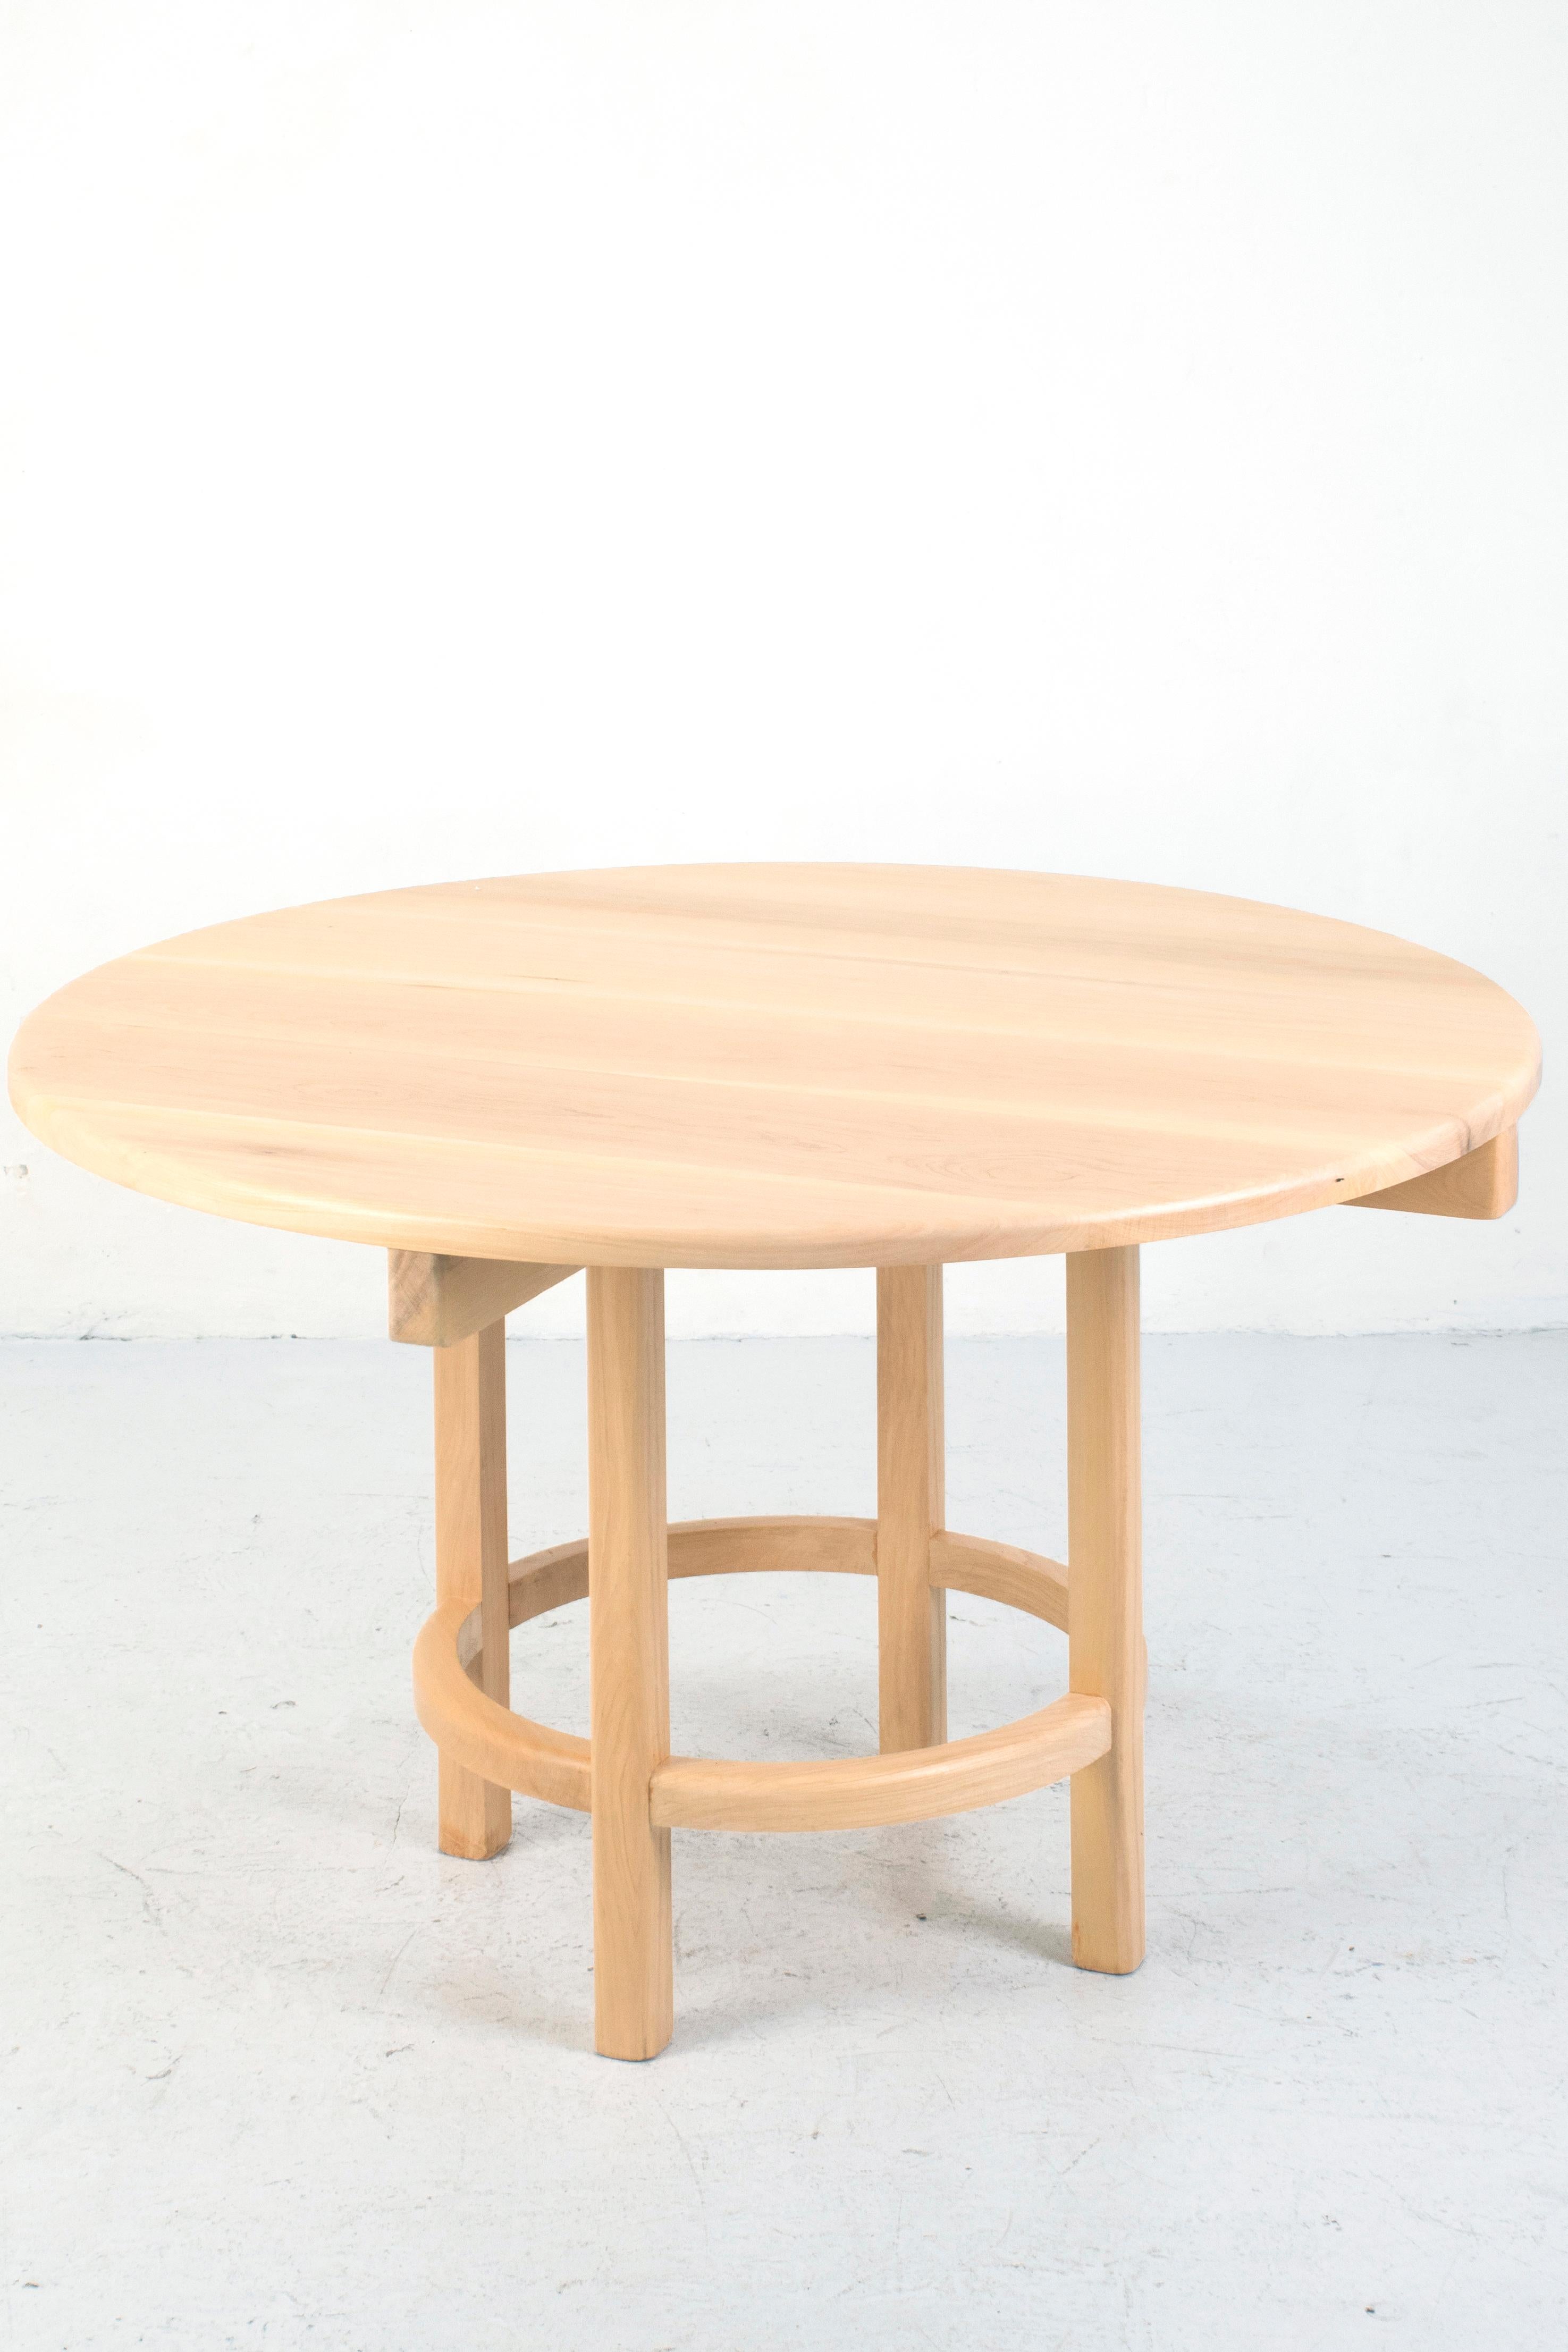 Orno Table de salle à manger ronde par Ries
Dimensions : D120 x H73 cm 
MATERIAL : Bois dur
Laque mate transparente, laque mate colorée (finitions)

Ries est un studio de design basé à Buenos Aires, en Argentine, qui se consacre à la conception